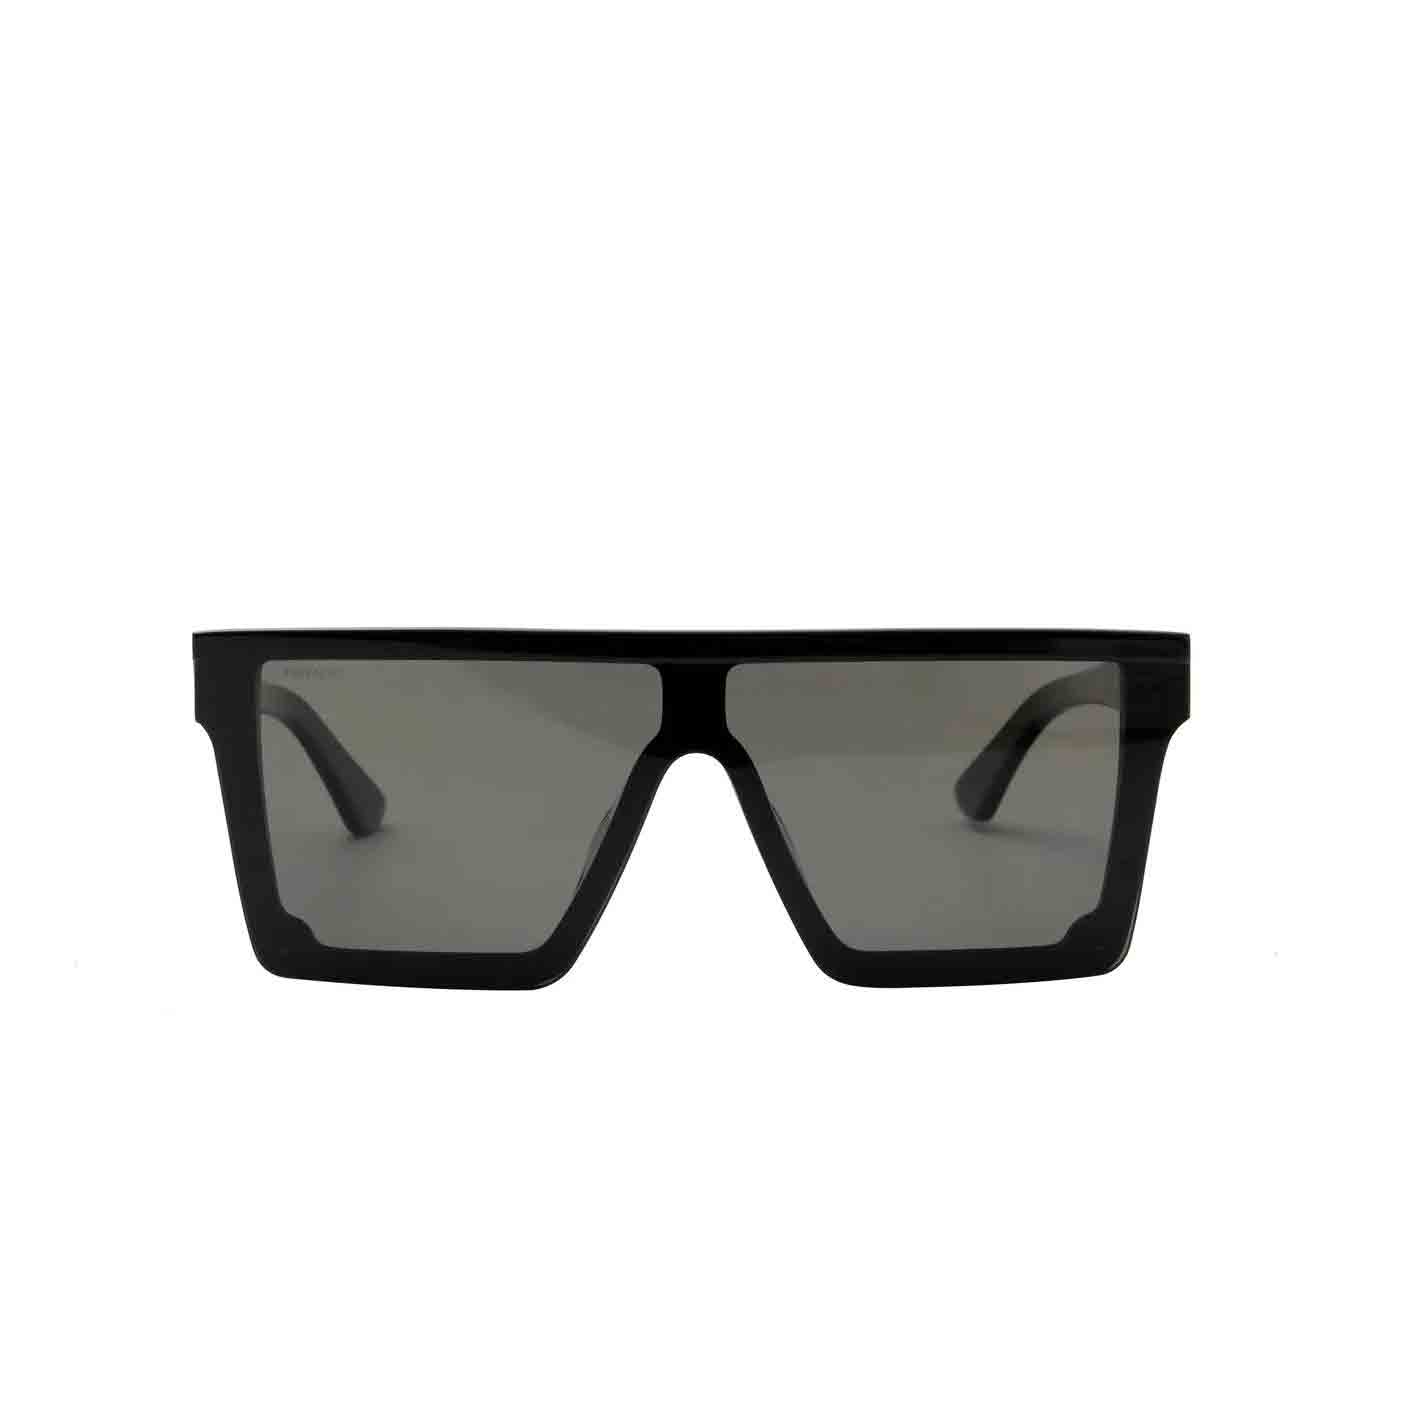 Dark Sunglasses | Hypoallergenic, Anti-Reflective | Privado Black / Acetate